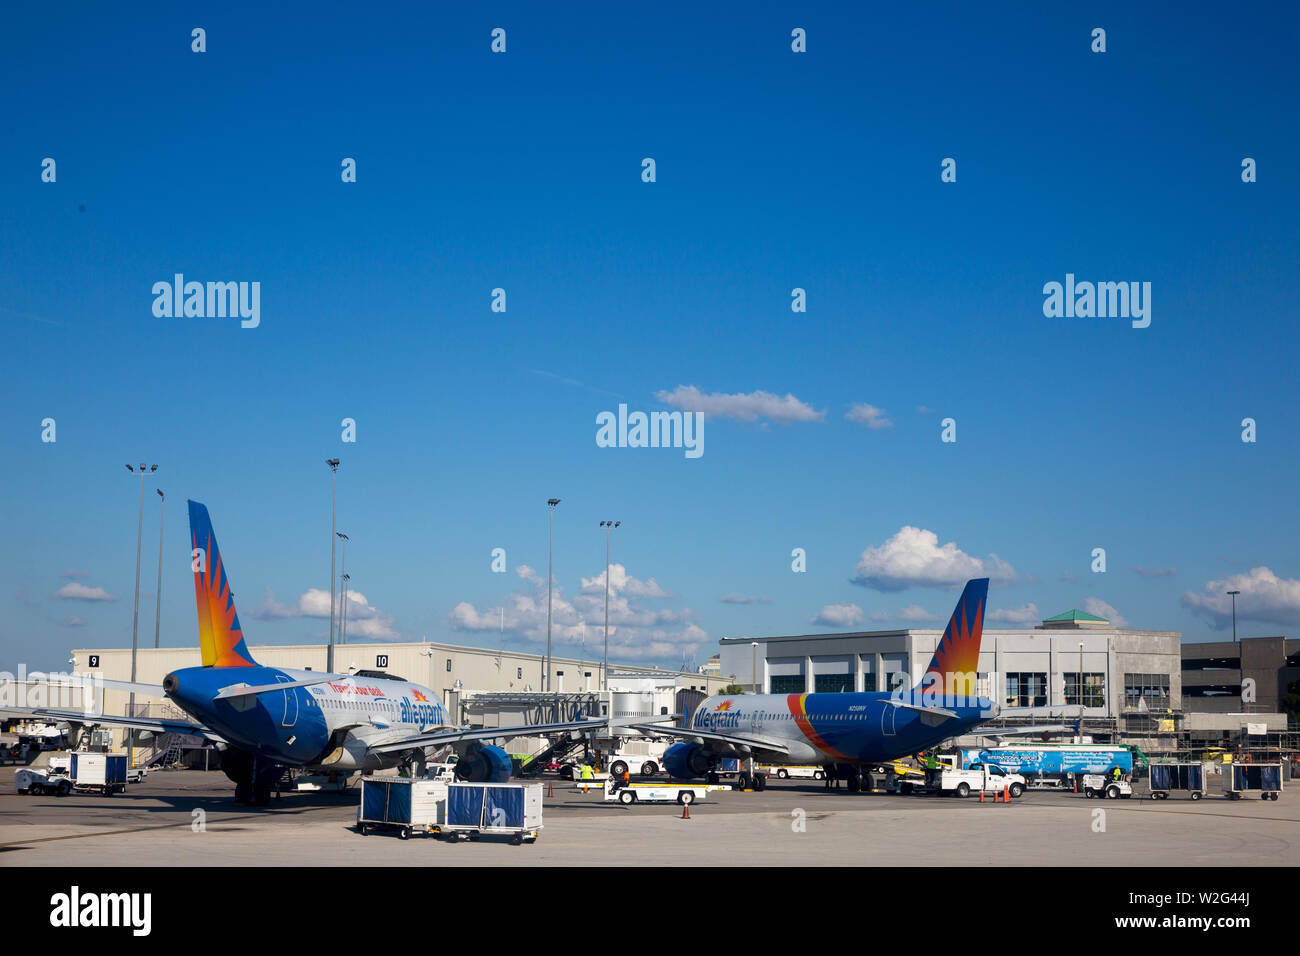 Zwei der Allegiant Air Flotte von Airbus A320 Jet Airliners am Orlando Sanford International Airport Terminal in Sanford, Florida, USA abgestellt sind. Stockfoto